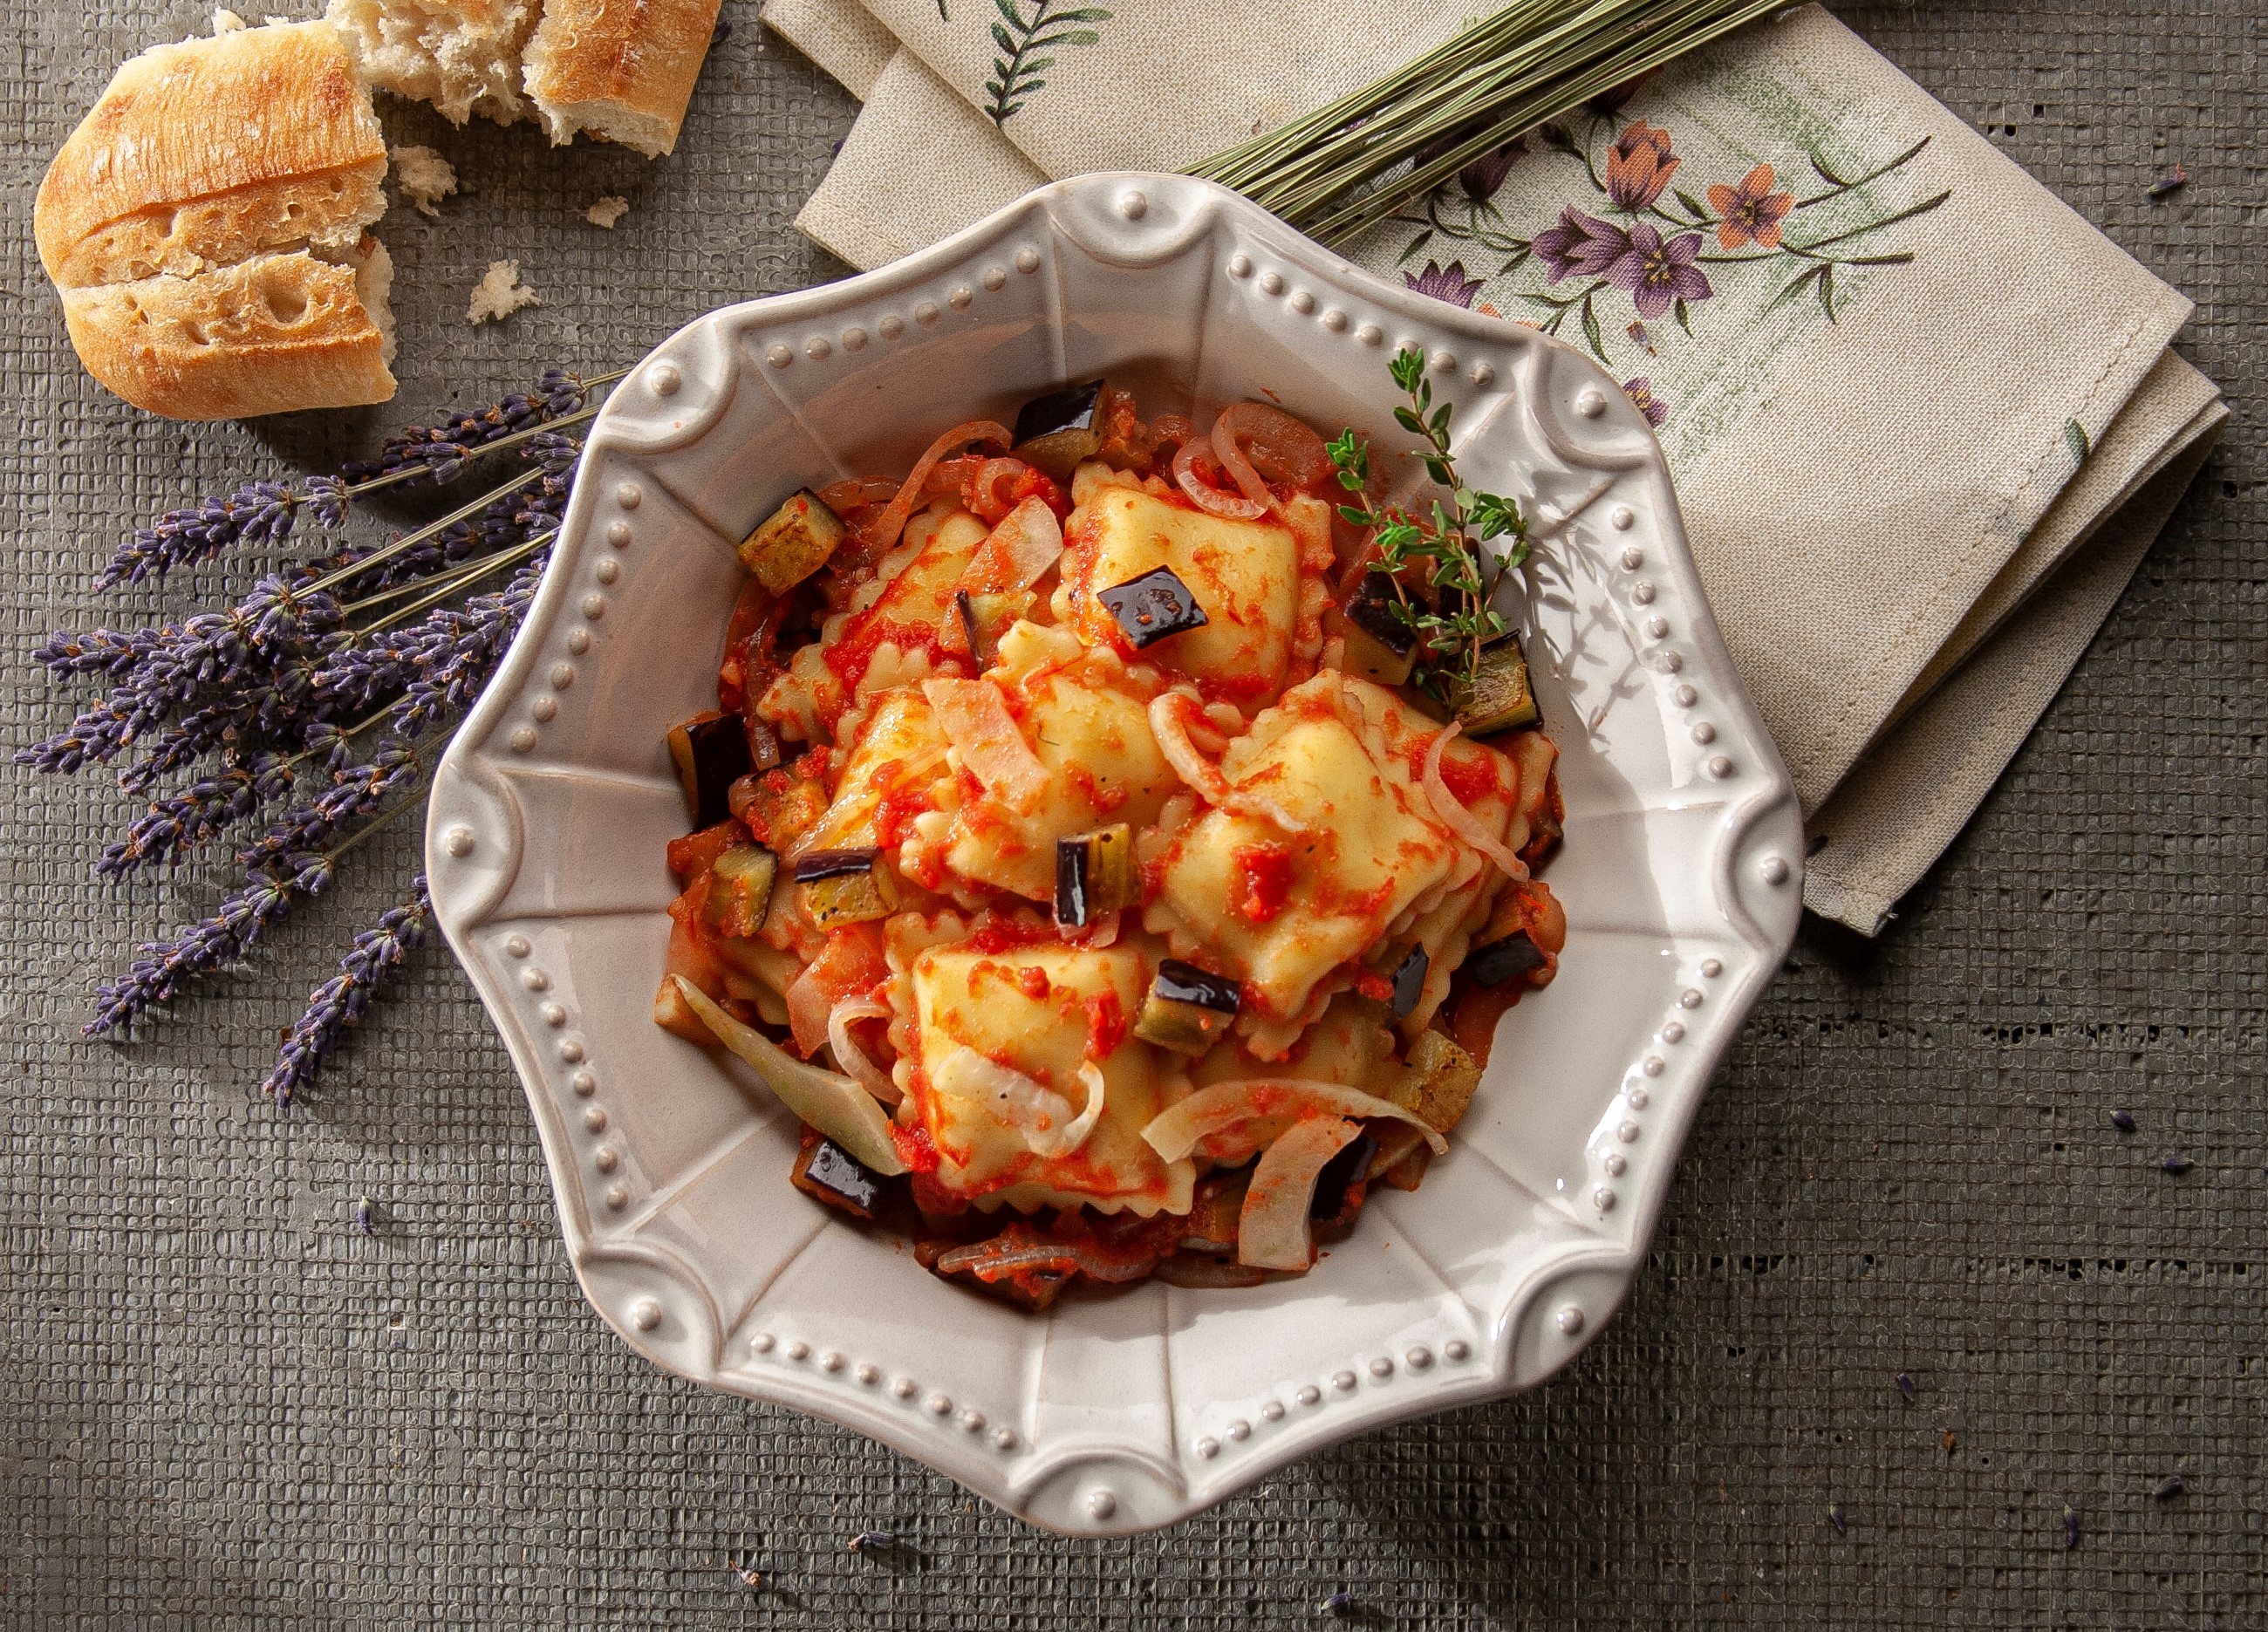 Four Cheese Ravioli with Tomato & Eggplant Sauce